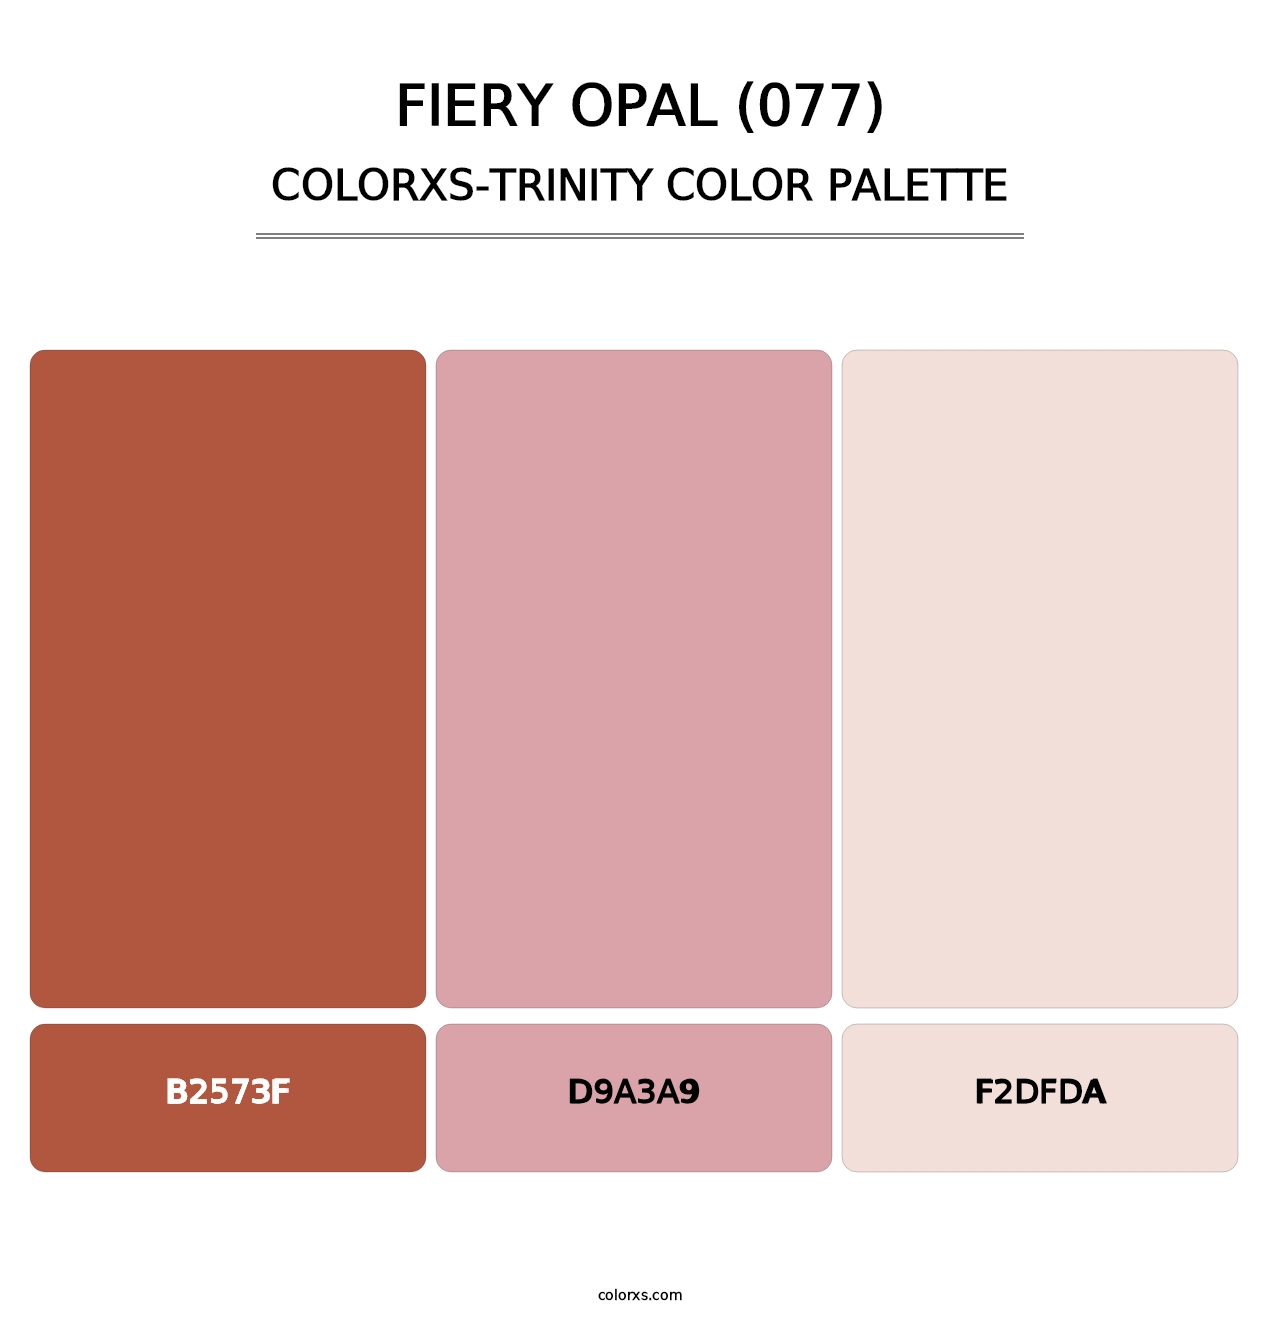 Fiery Opal (077) - Colorxs Trinity Palette